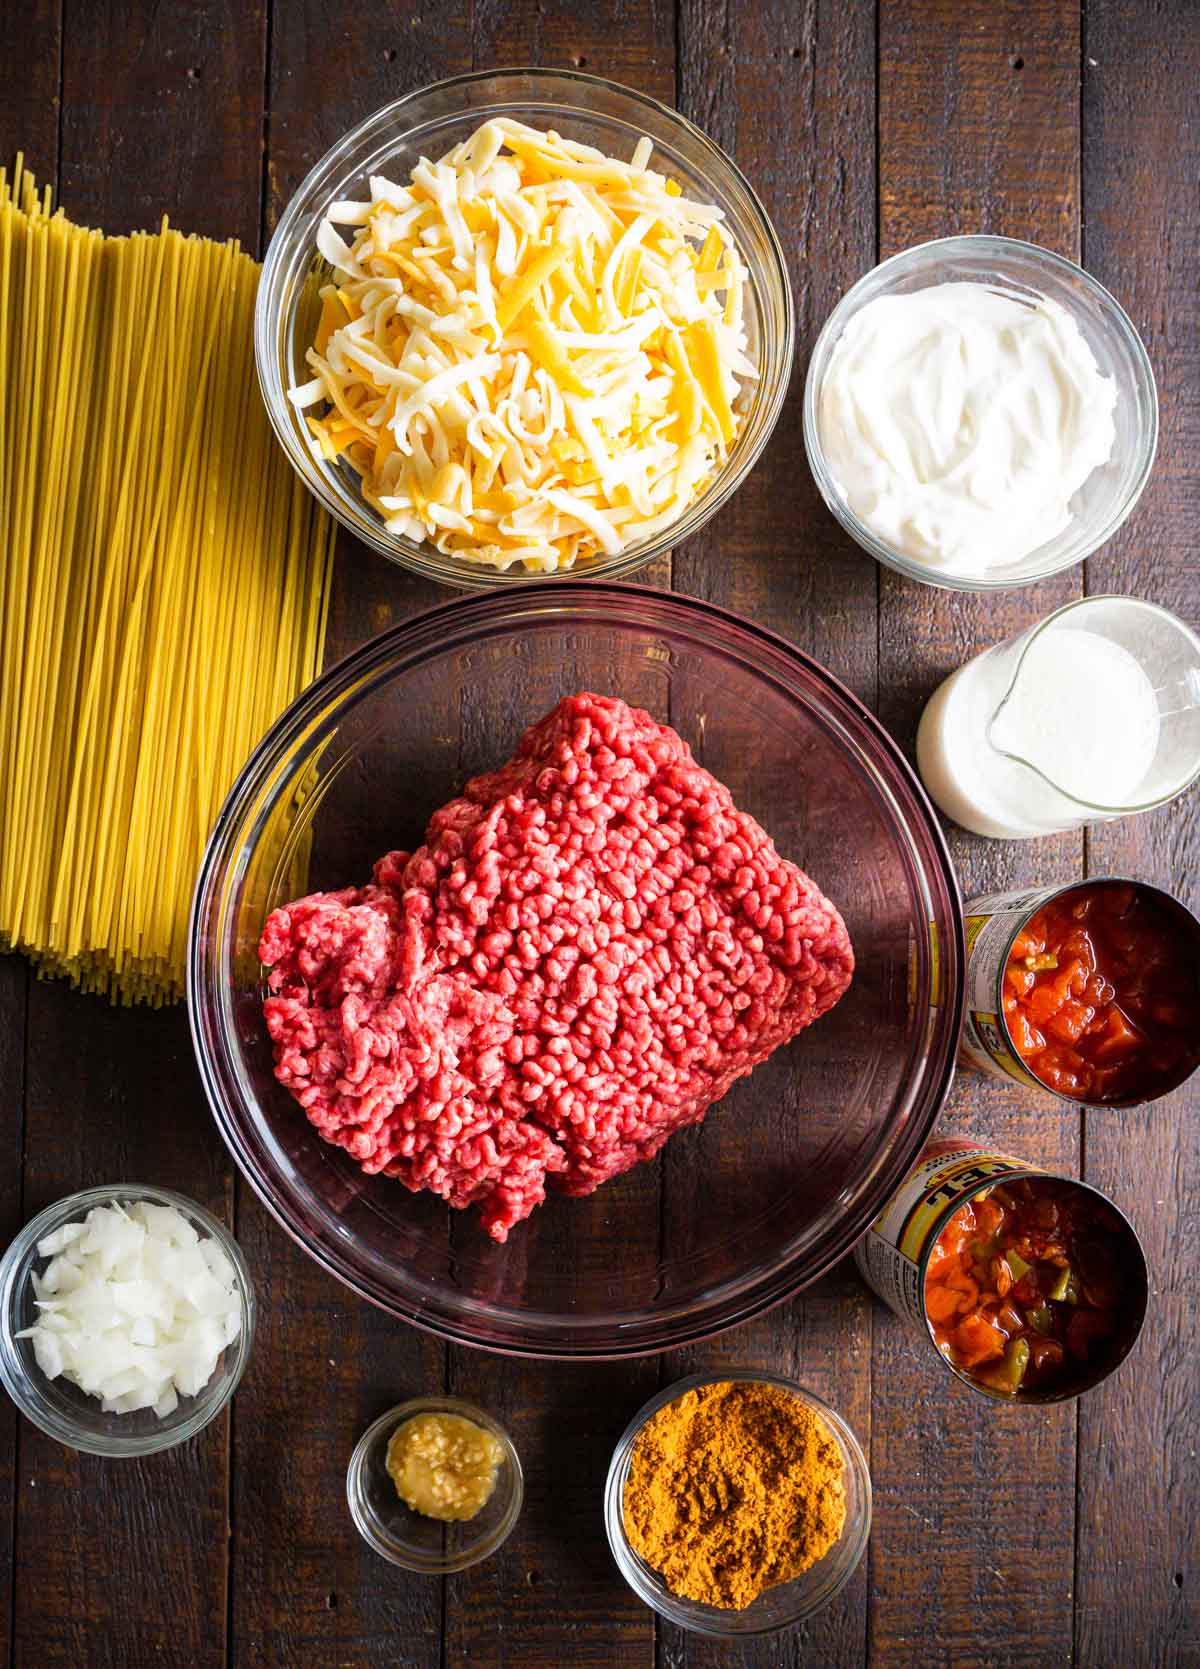 Image of ingredients to make taco spaghetti bake.